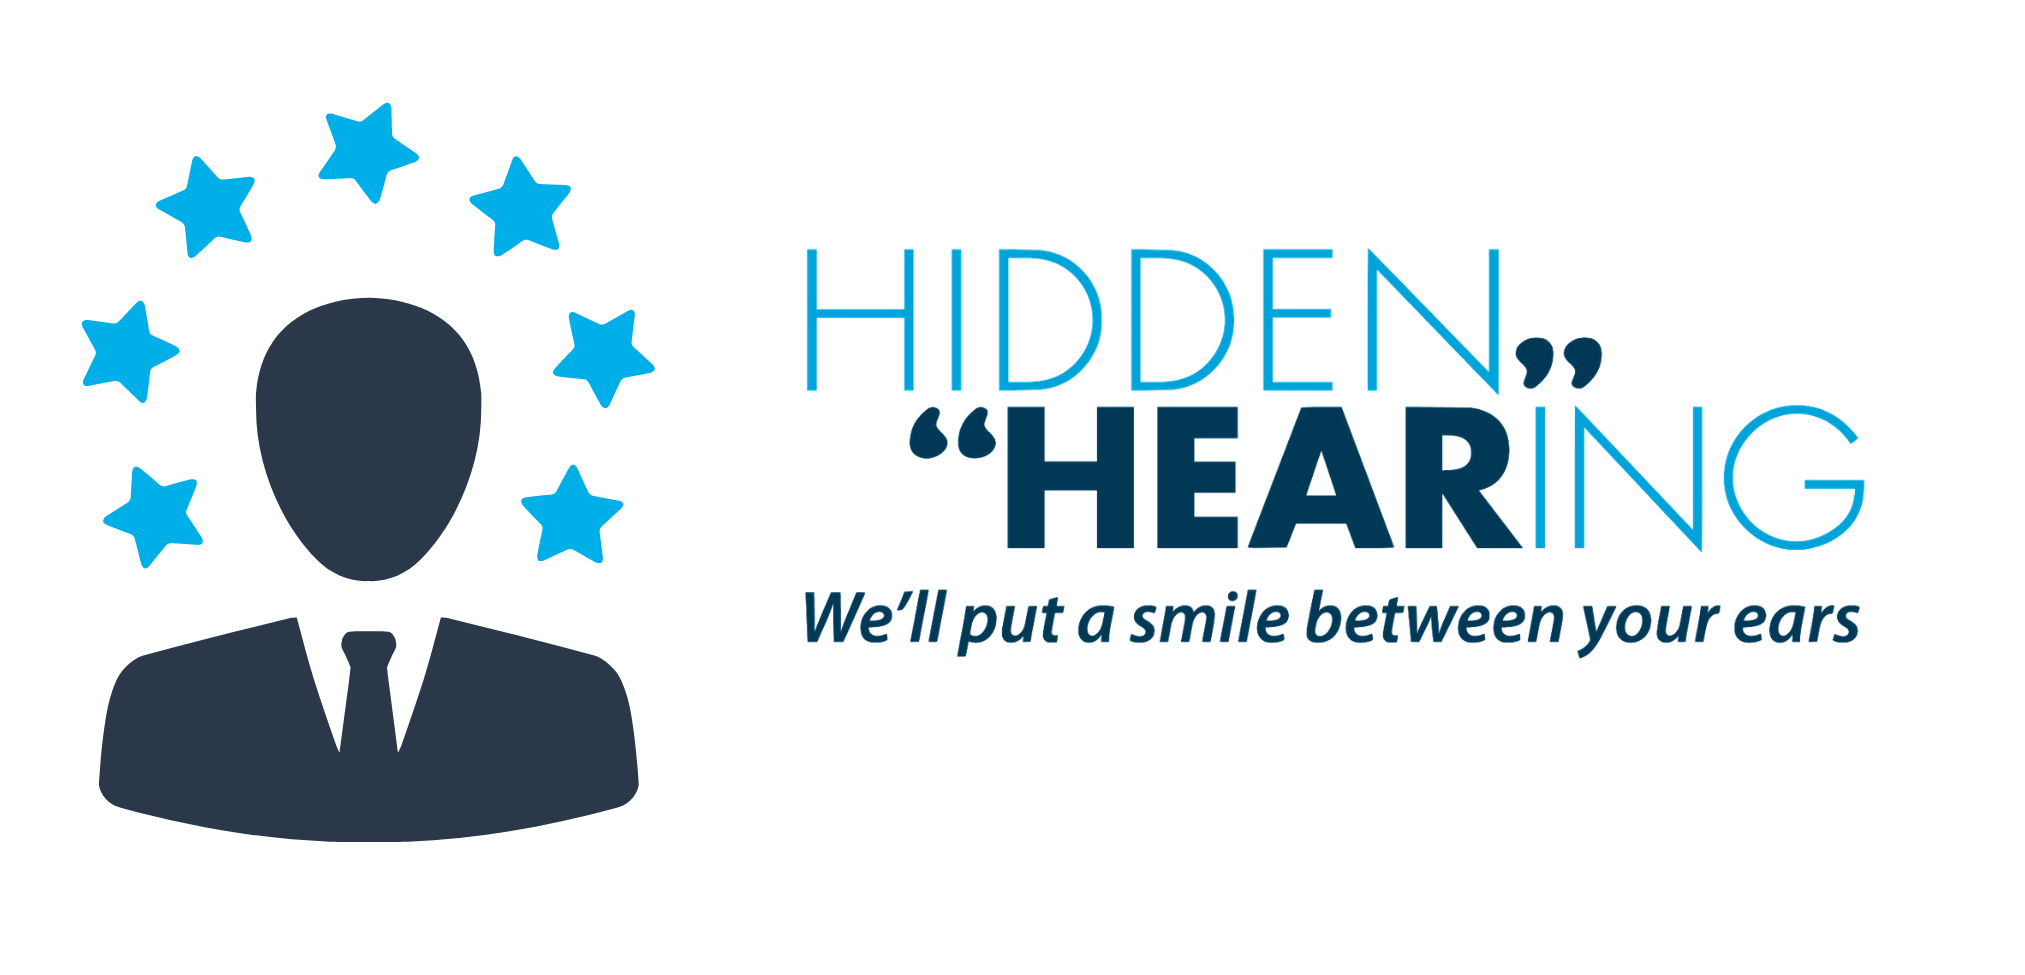 Hidden hearing reviews